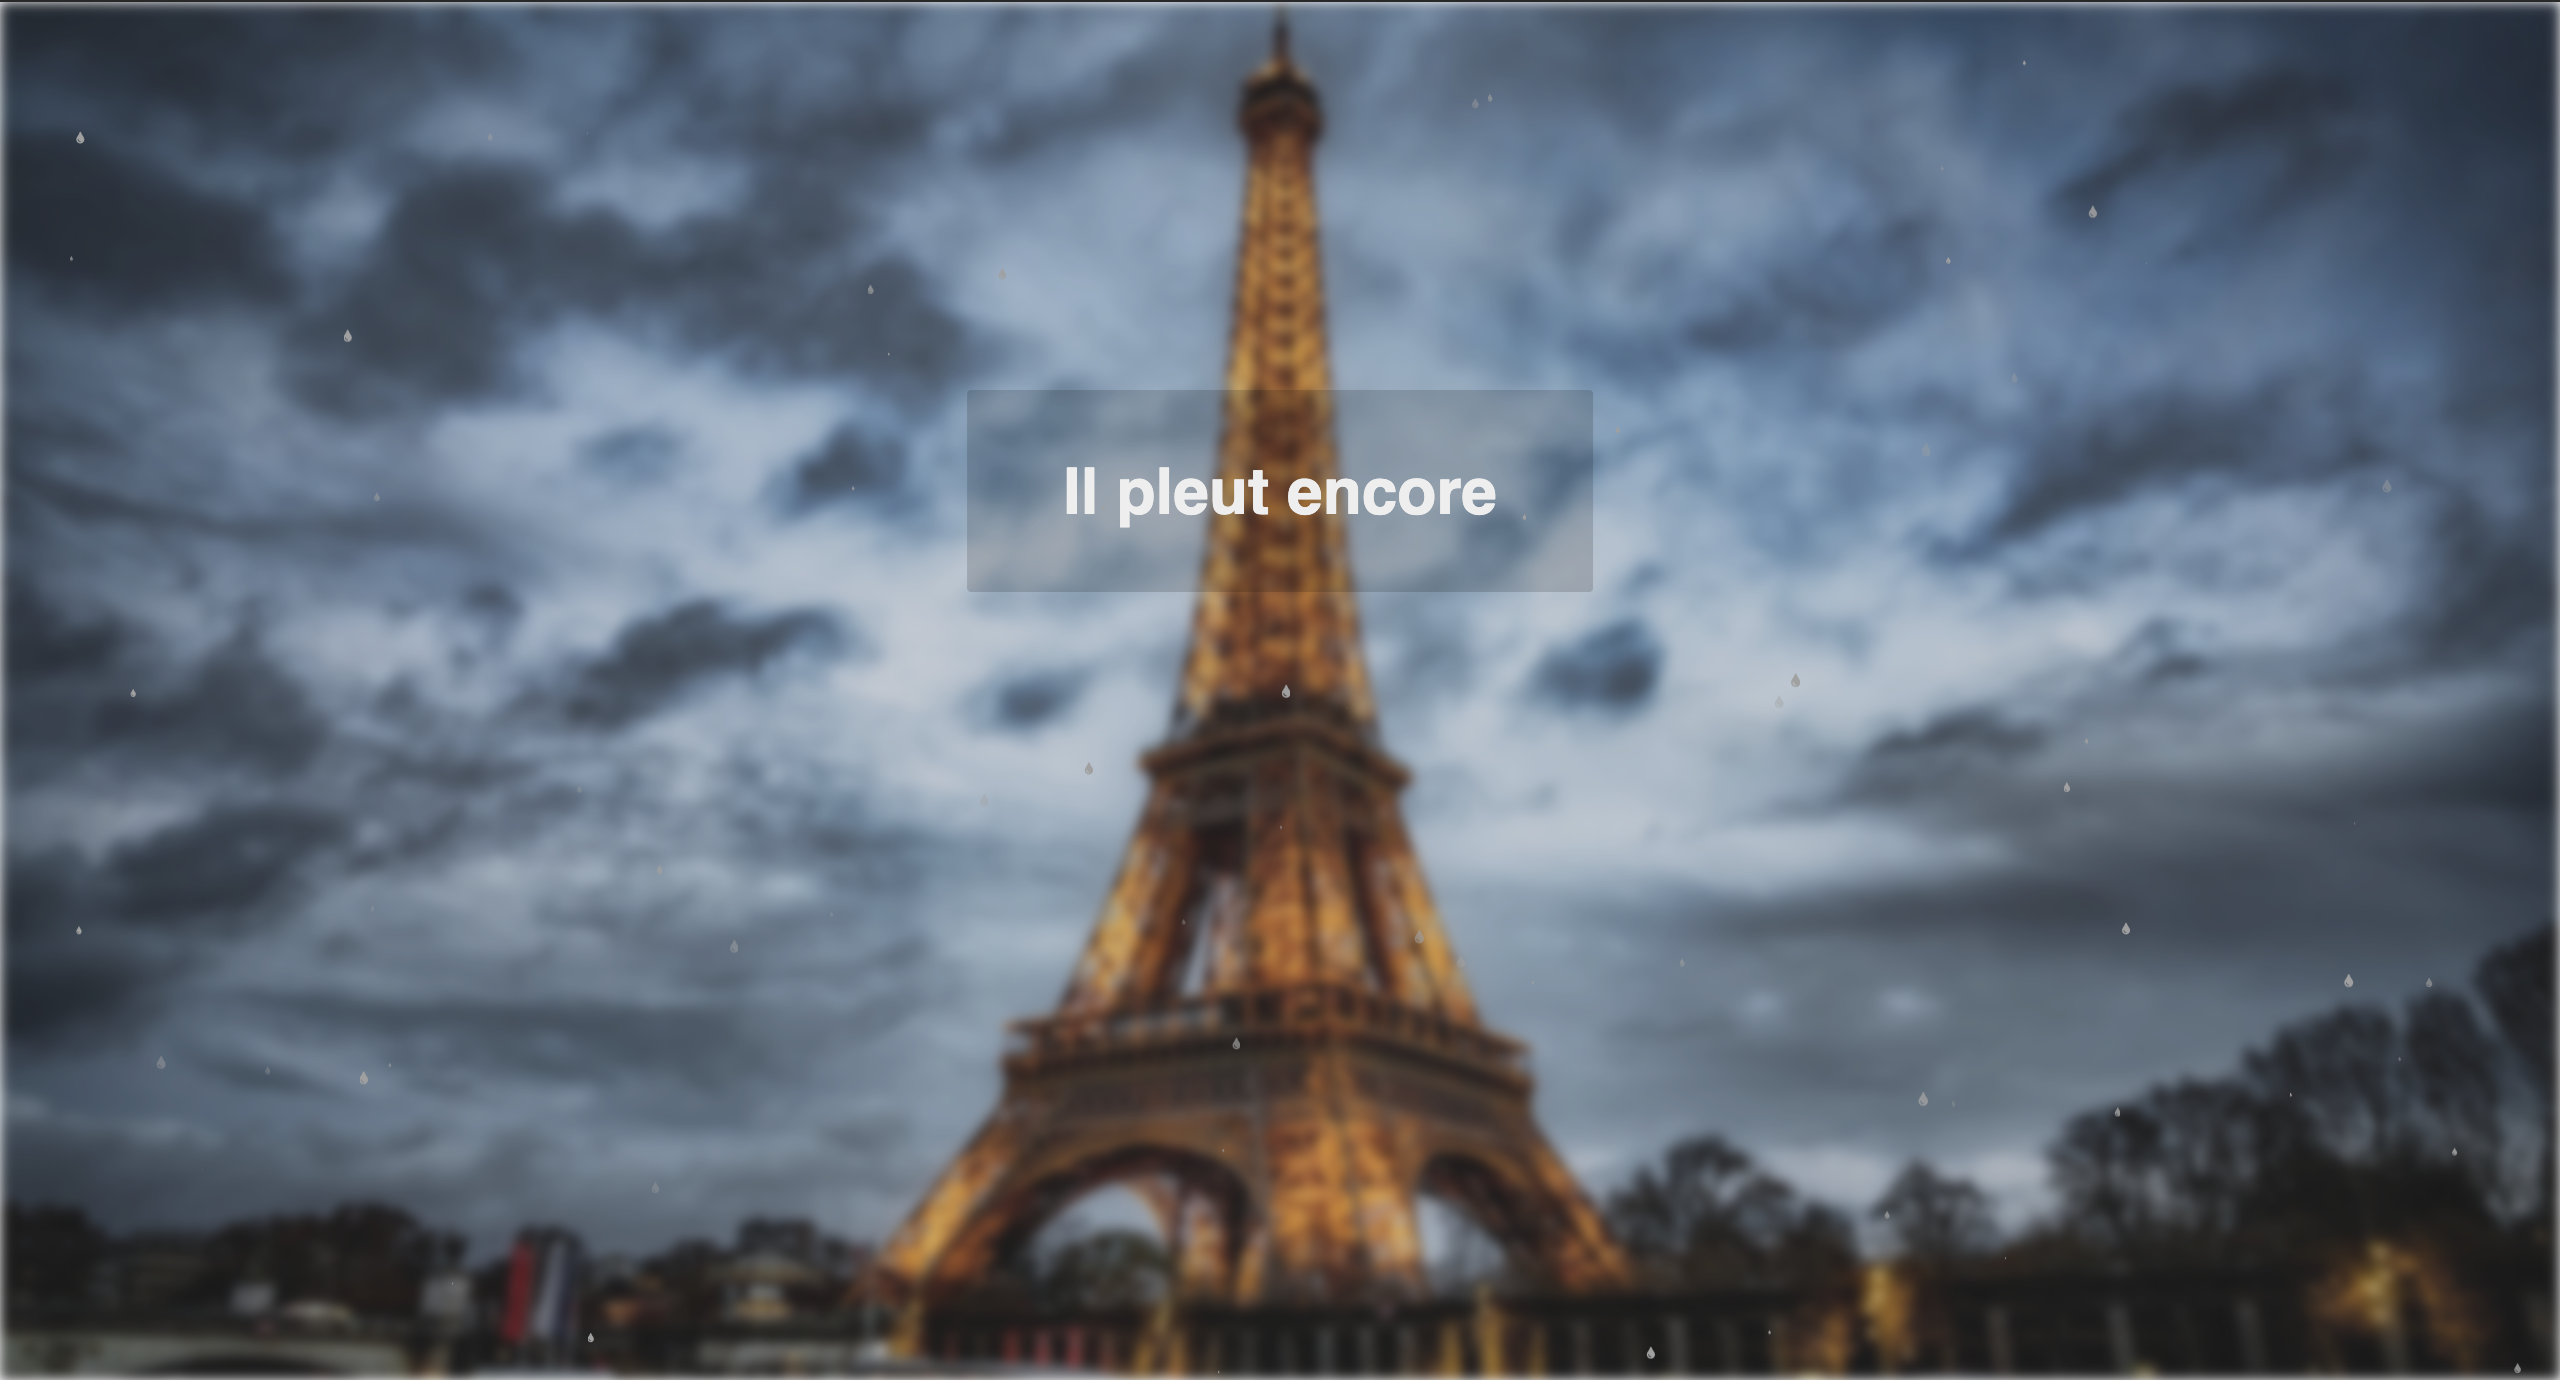 c'est une image de la tour Eiffel avec une animation de pluie